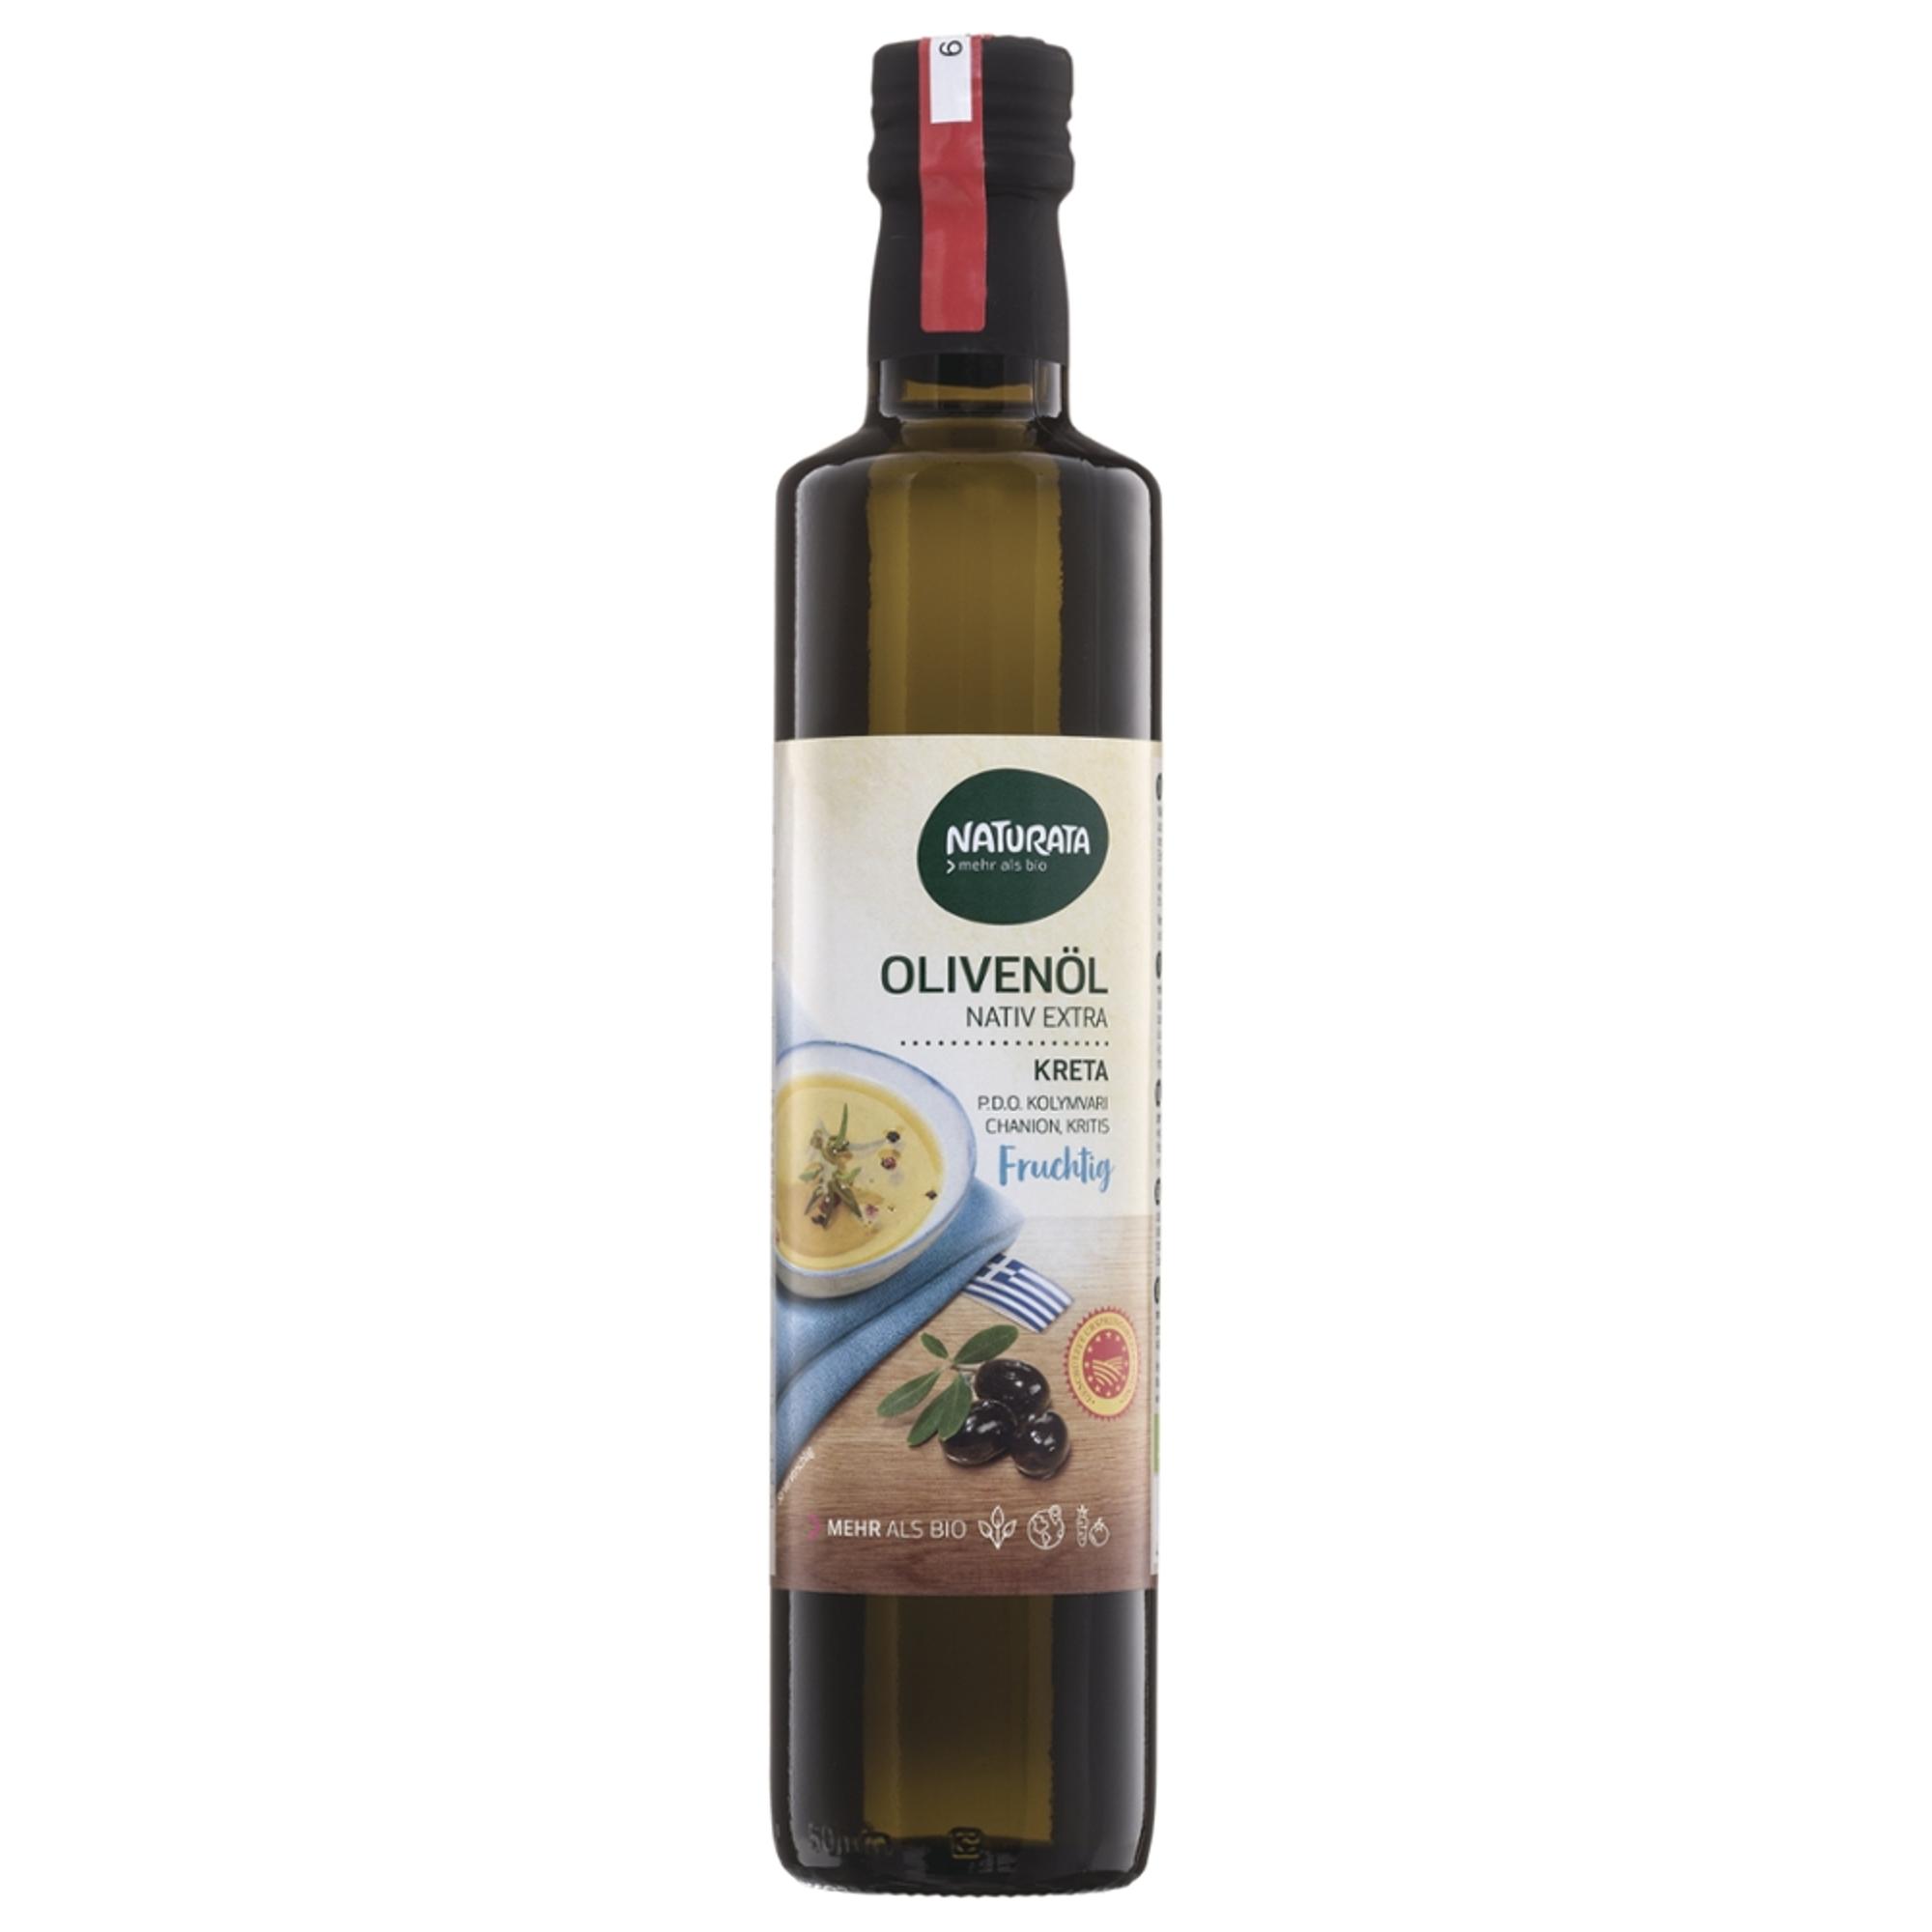 Olivenöl nativ extra, aus Kreta von Naturata.